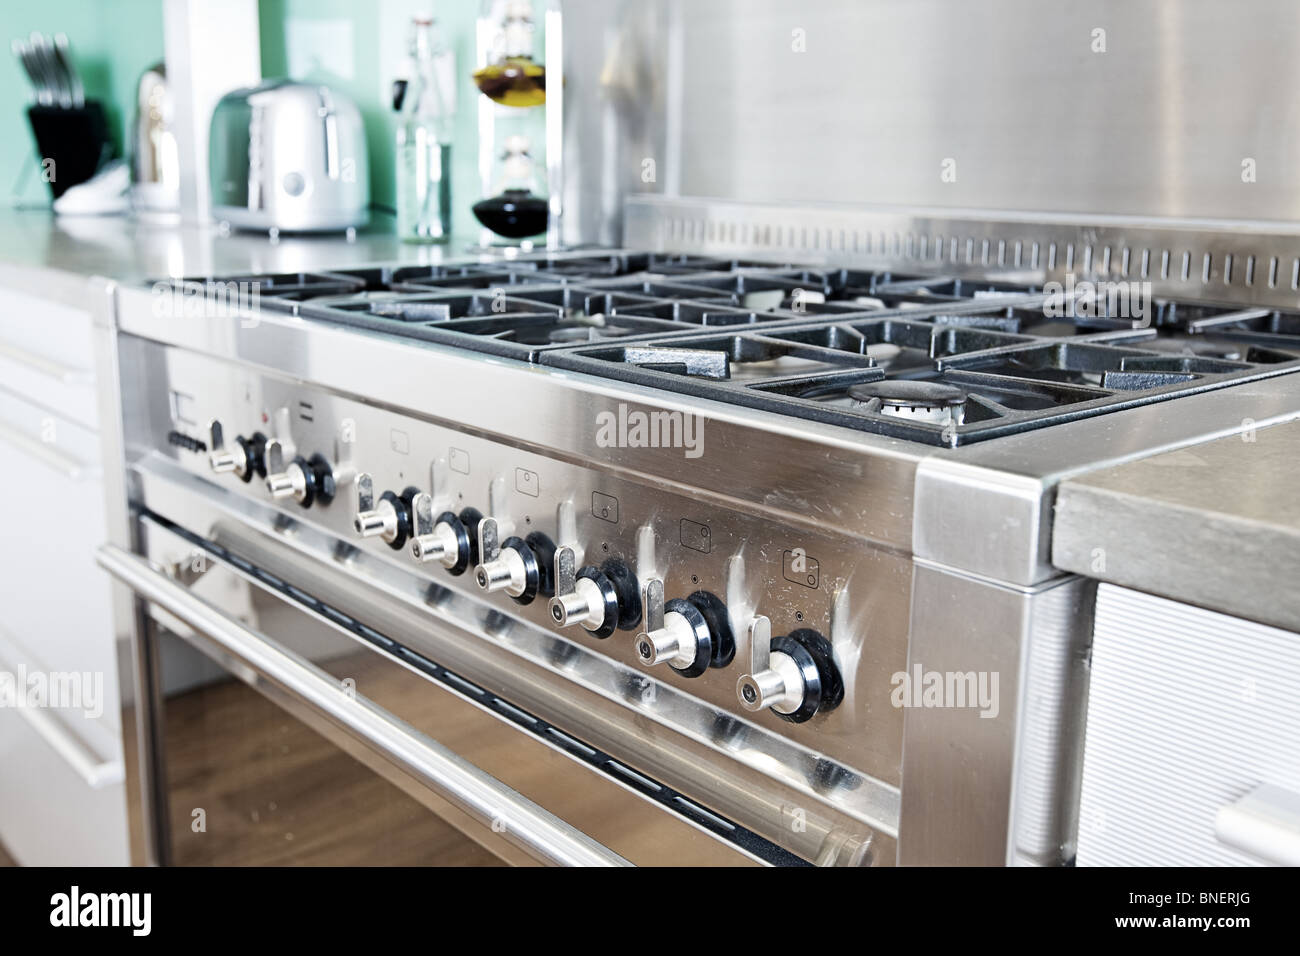 Gros plan sur une cuisinière dans la cuisine moderne et colorée Photo Stock  - Alamy